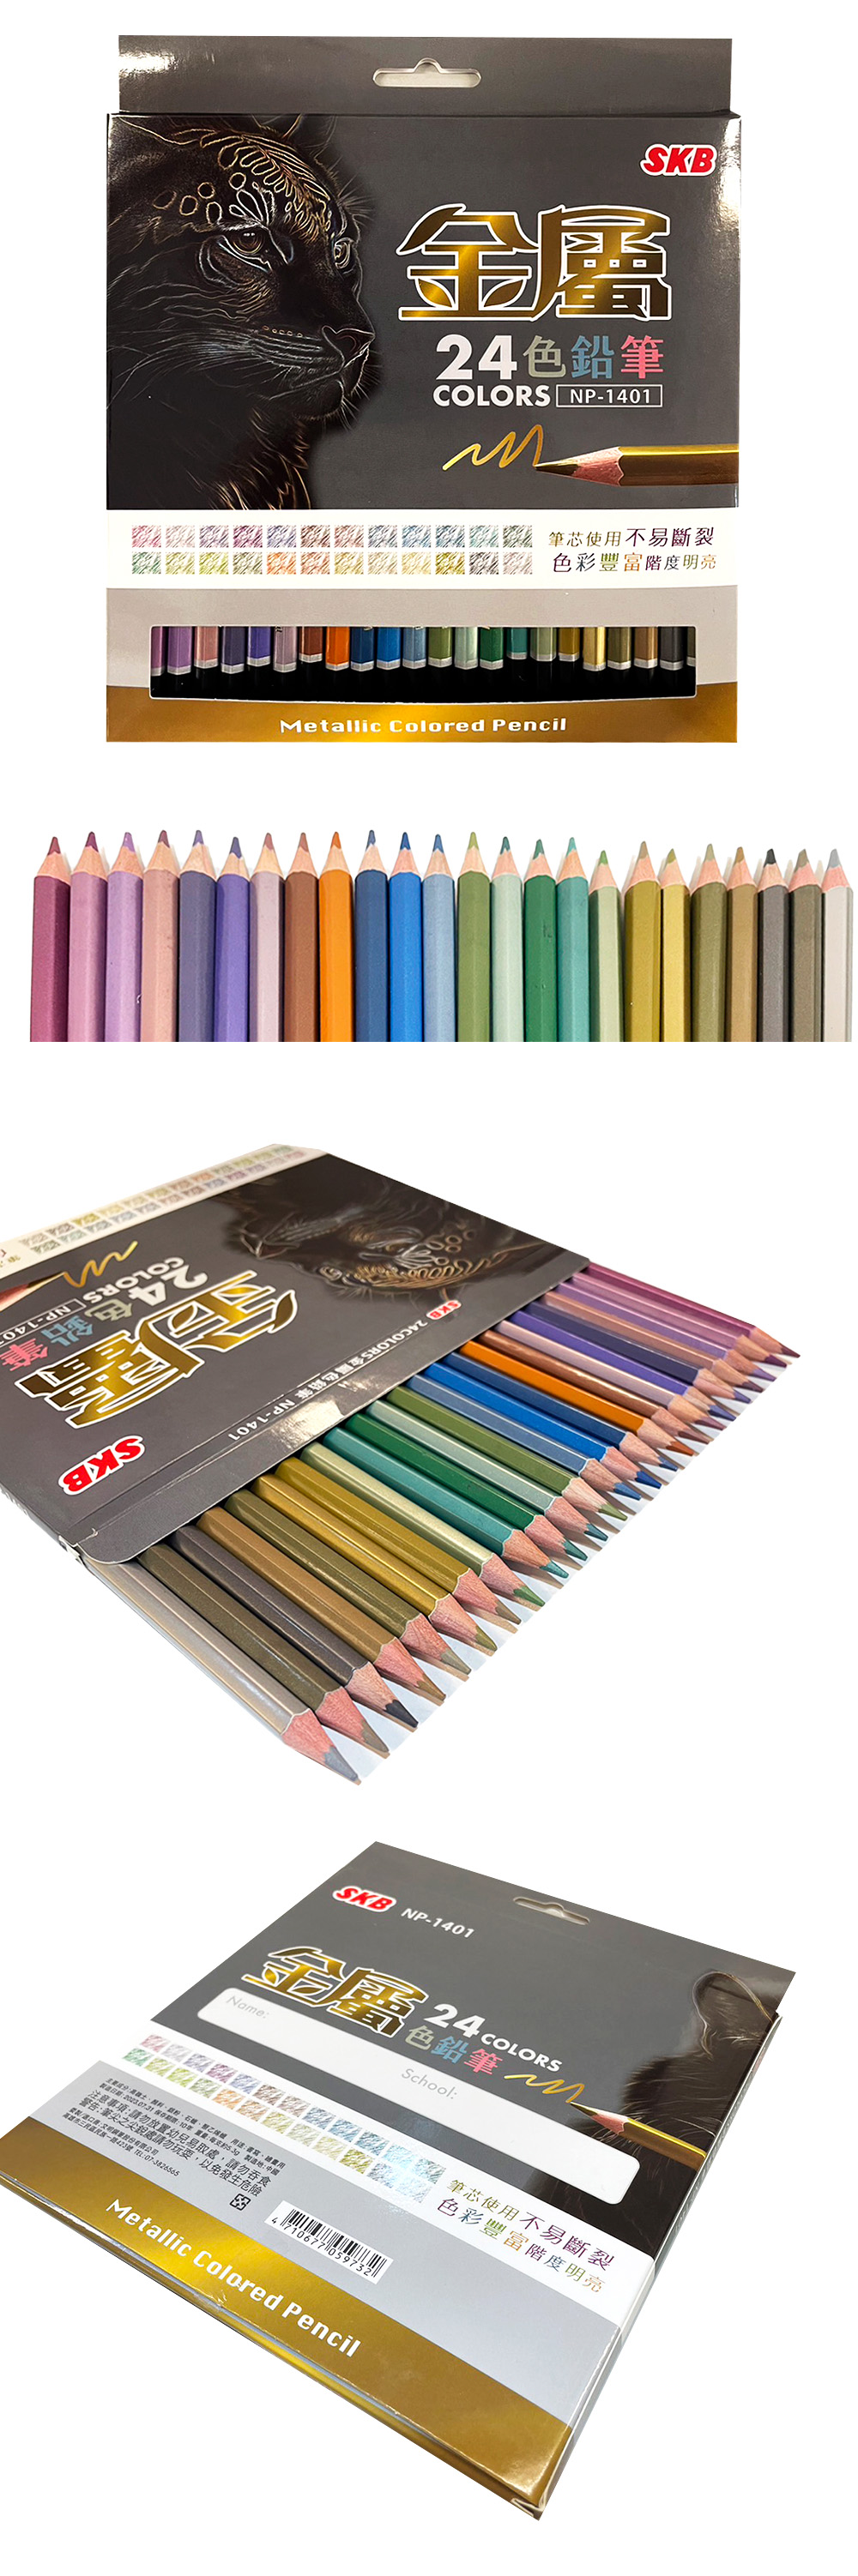 色鉛筆 油性 色鉛筆 文明 金屬色 色鉛筆